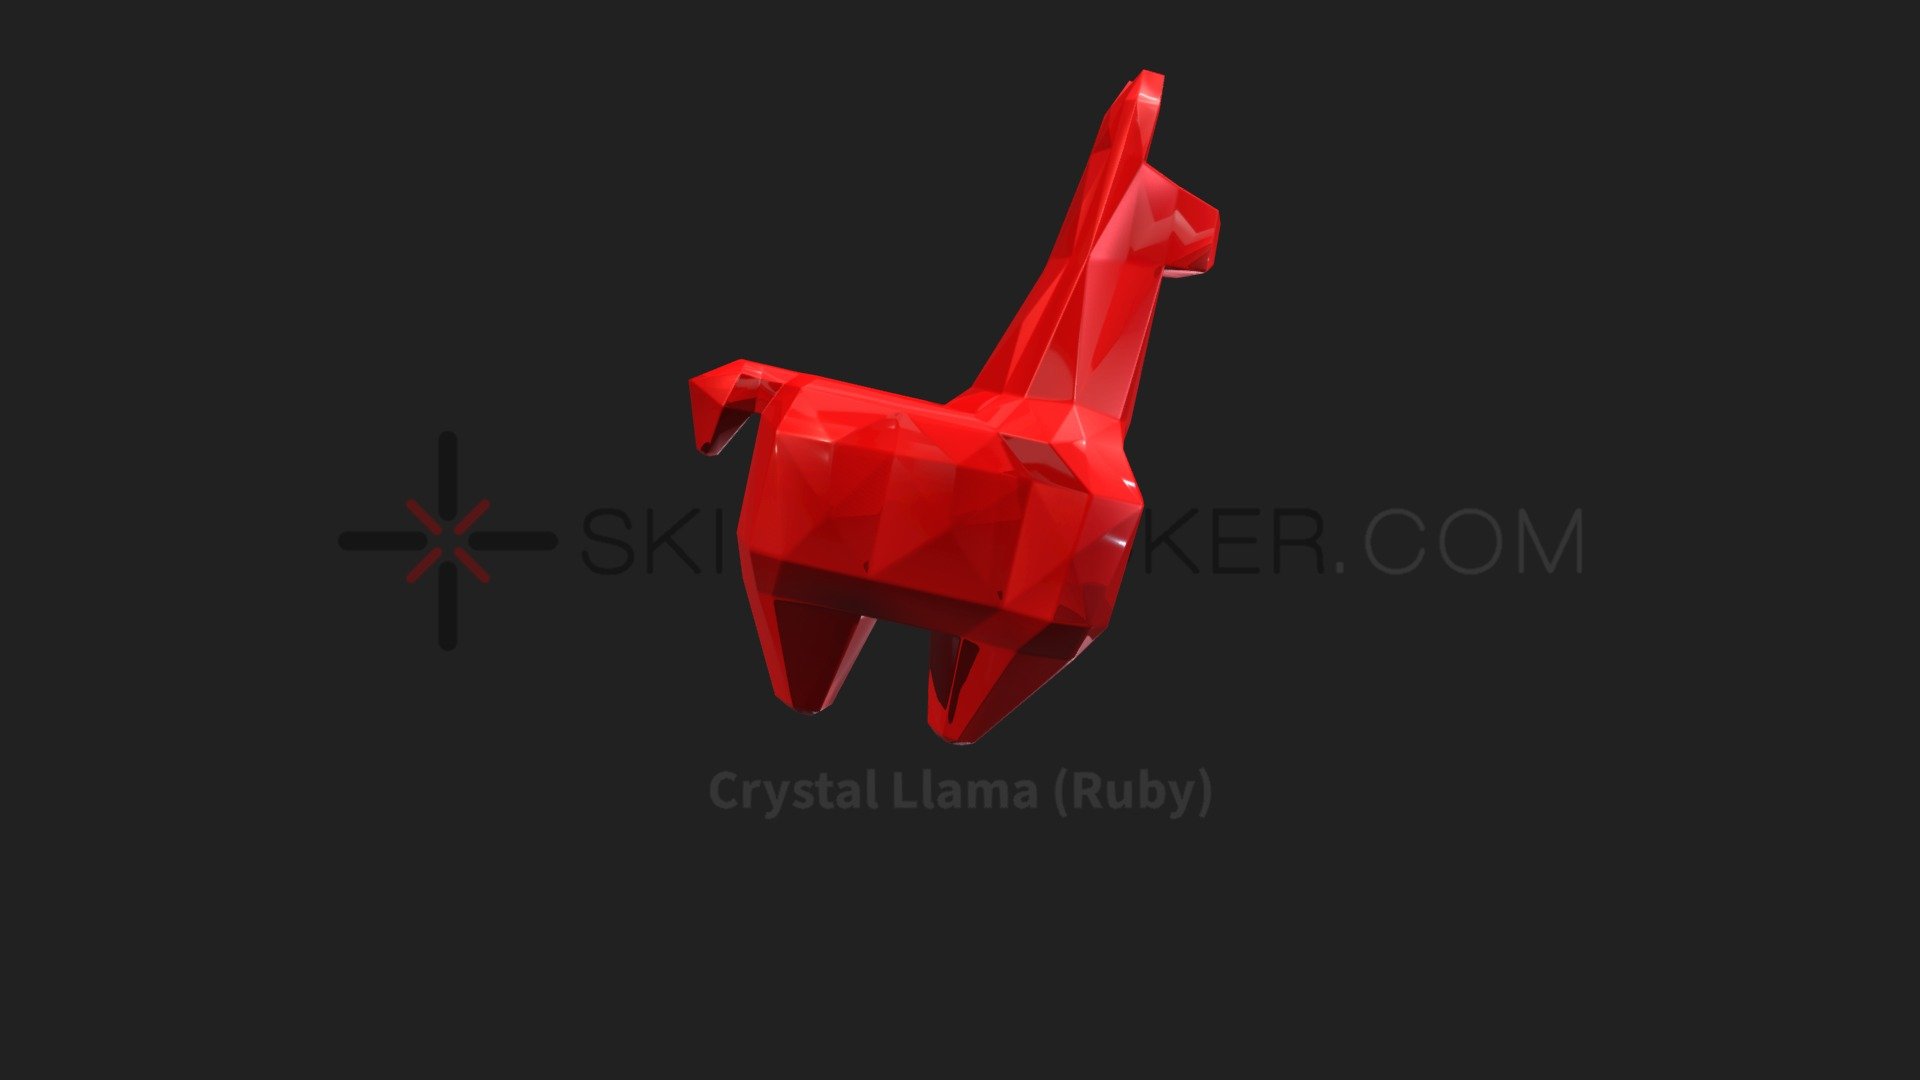 Fortnite - Crystal Llama (Ruby)